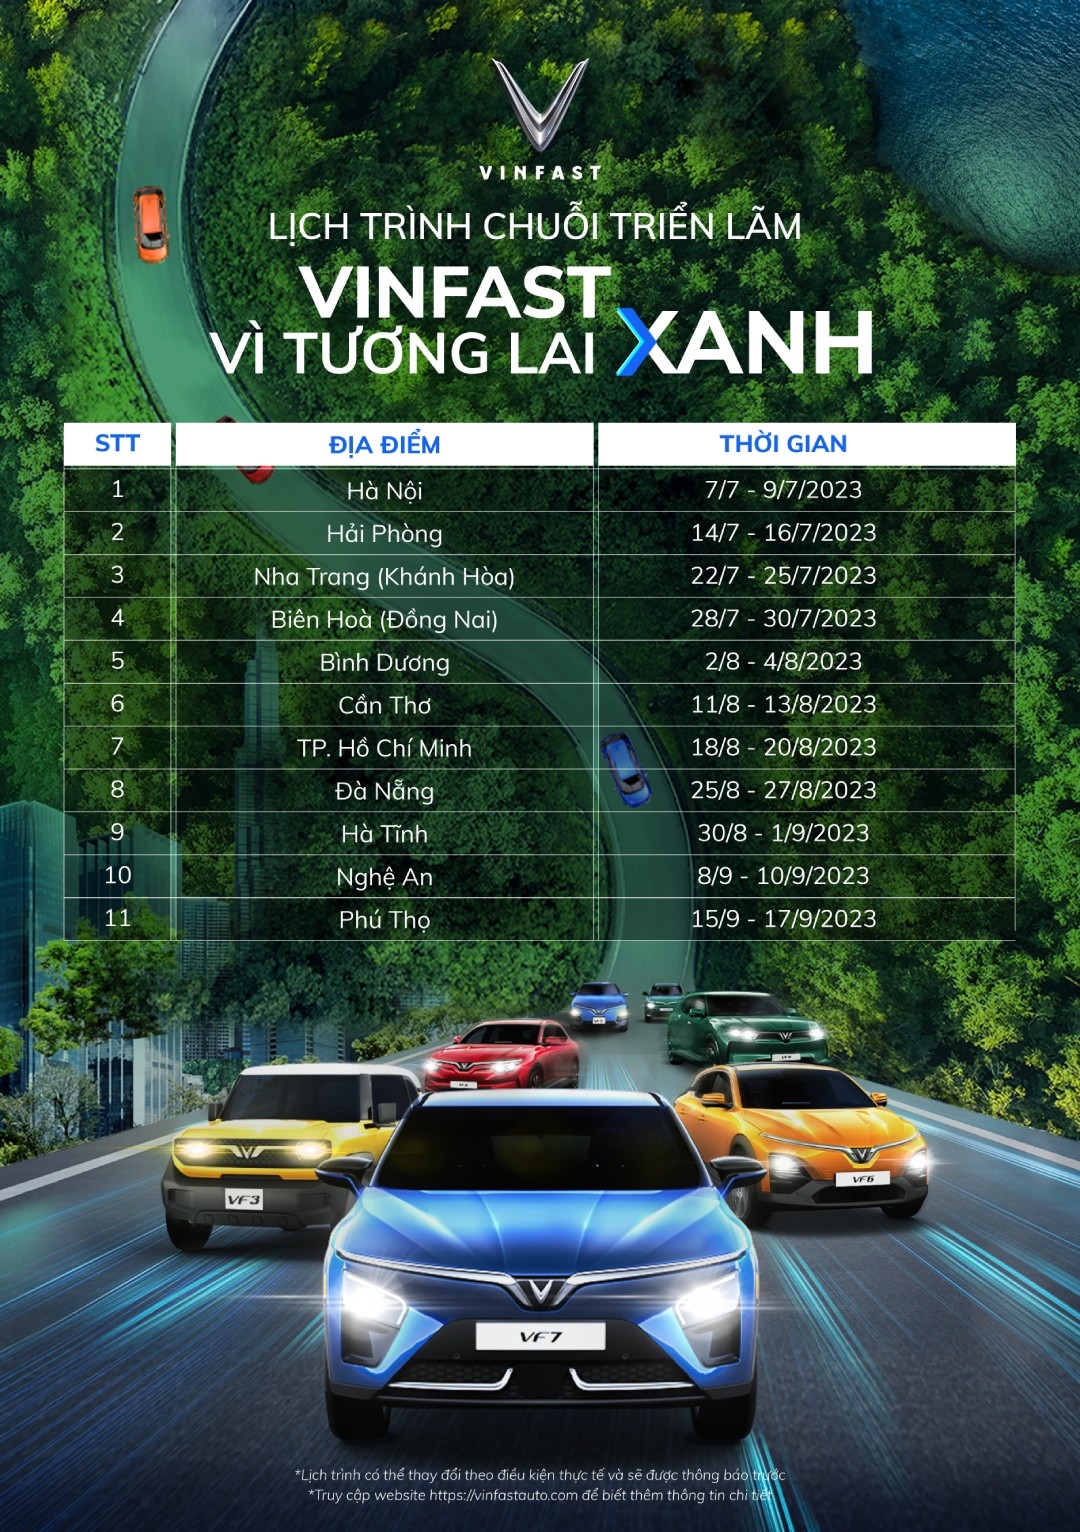 Triển lãm 'VinFast - Vì tương lai xanh' tại Hà Nội: Ra mắt bộ tứ xe điện VinFast mới 1